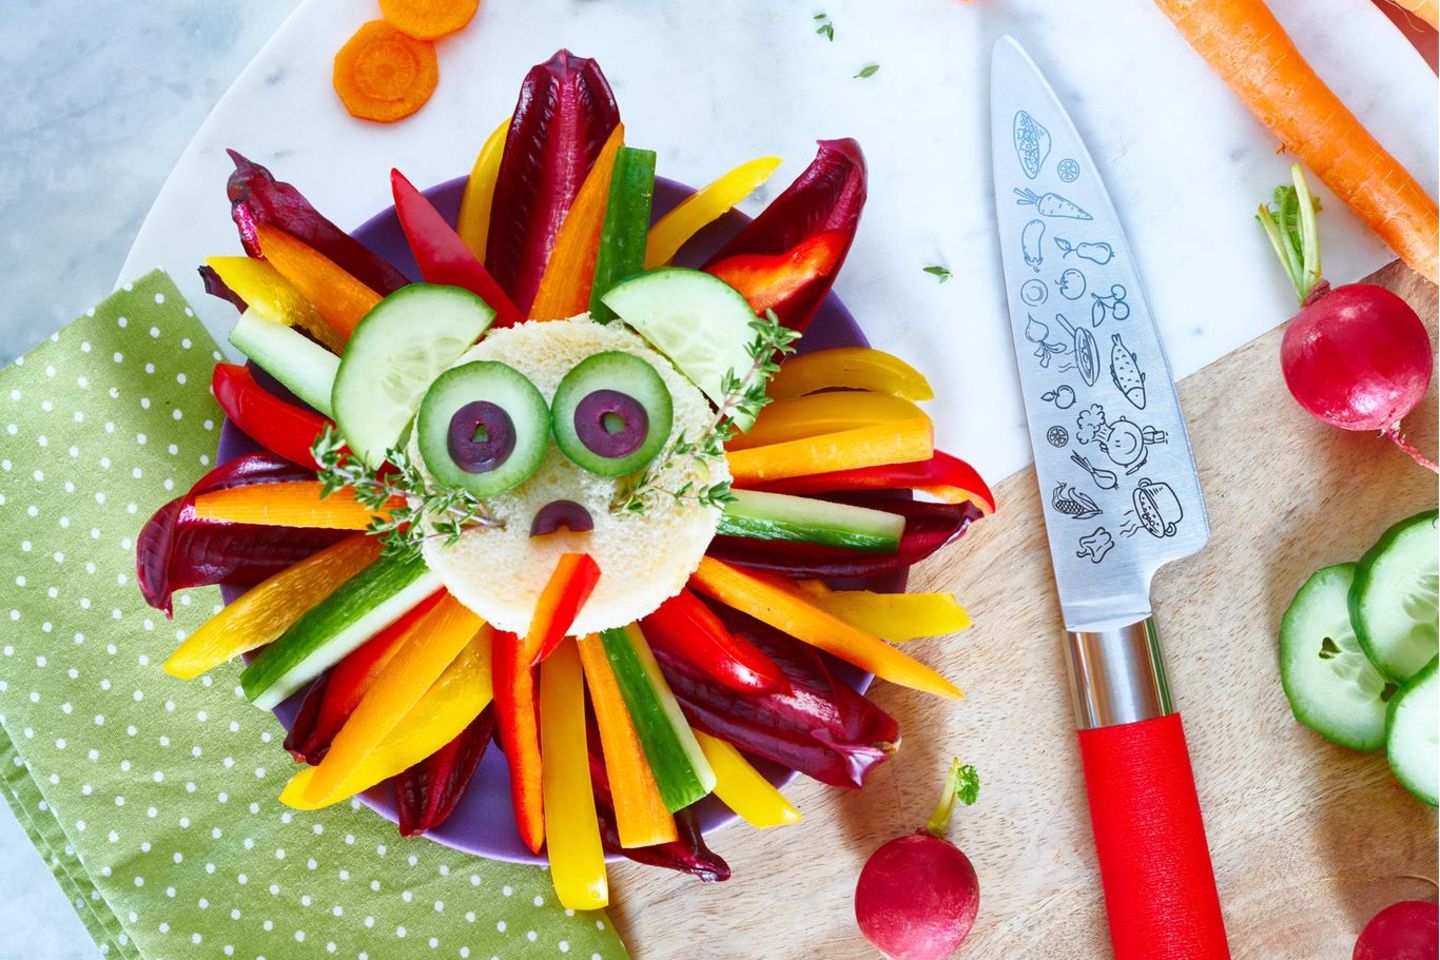 Unsere Lieblingsstücke: Kindermesser liegt neben Gemüse